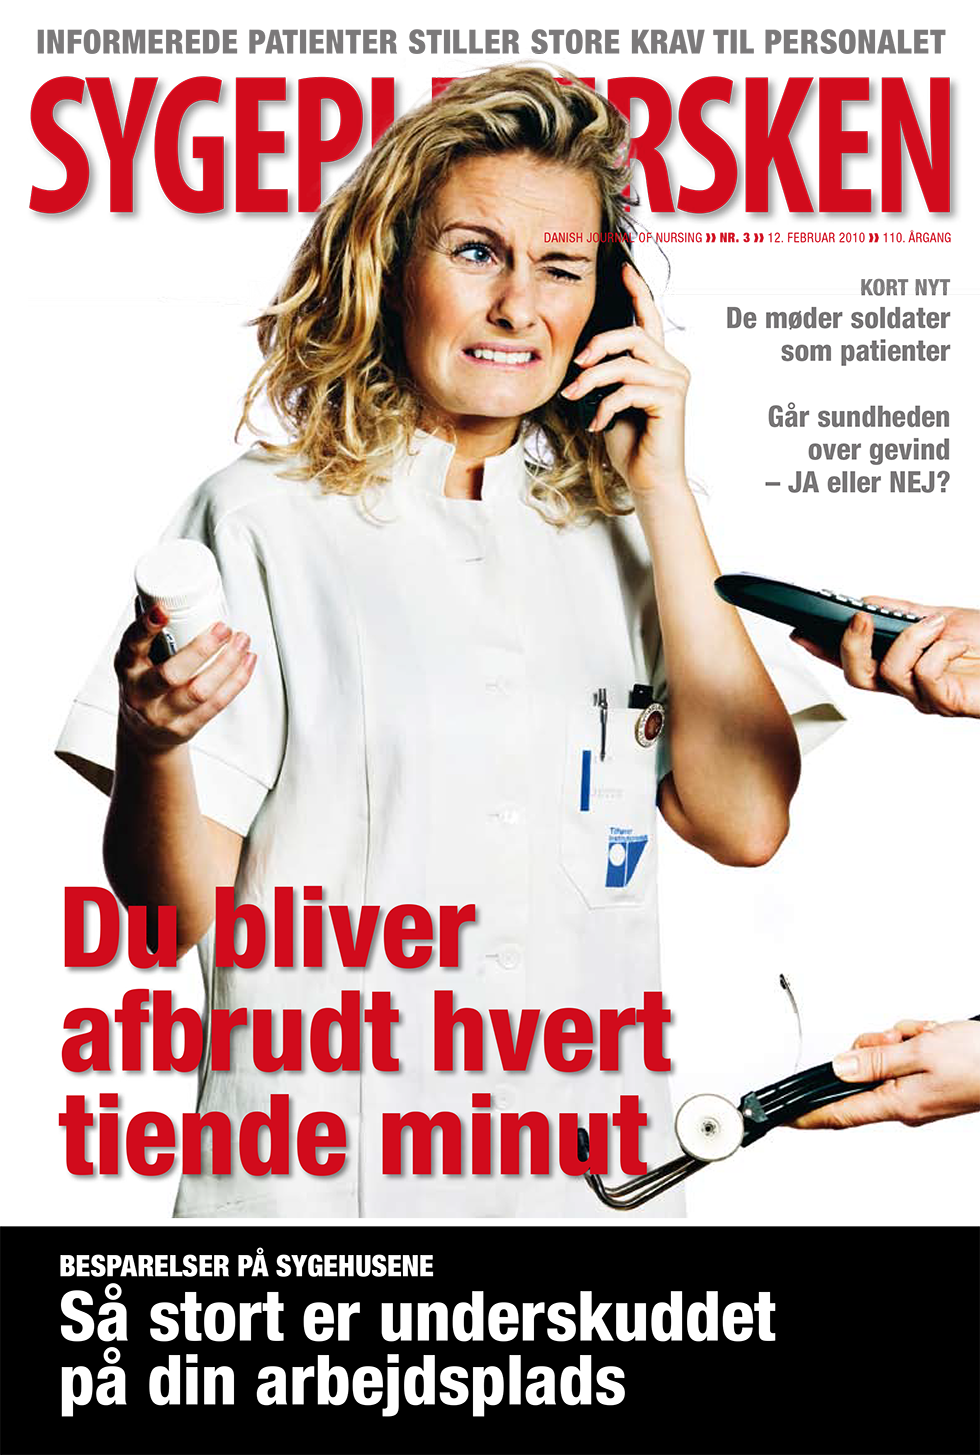 Sygeplejersken_2010_03 - magasinforsiden